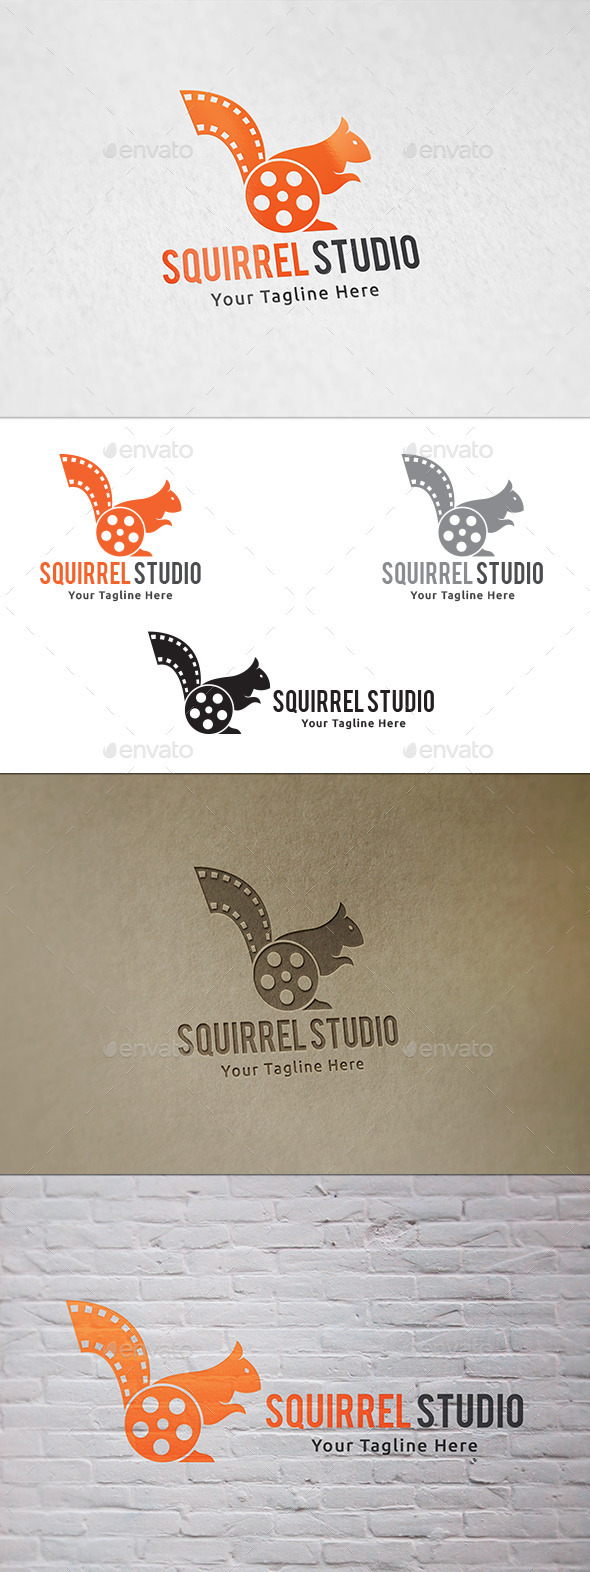 Squirrel Studio - Logo Template